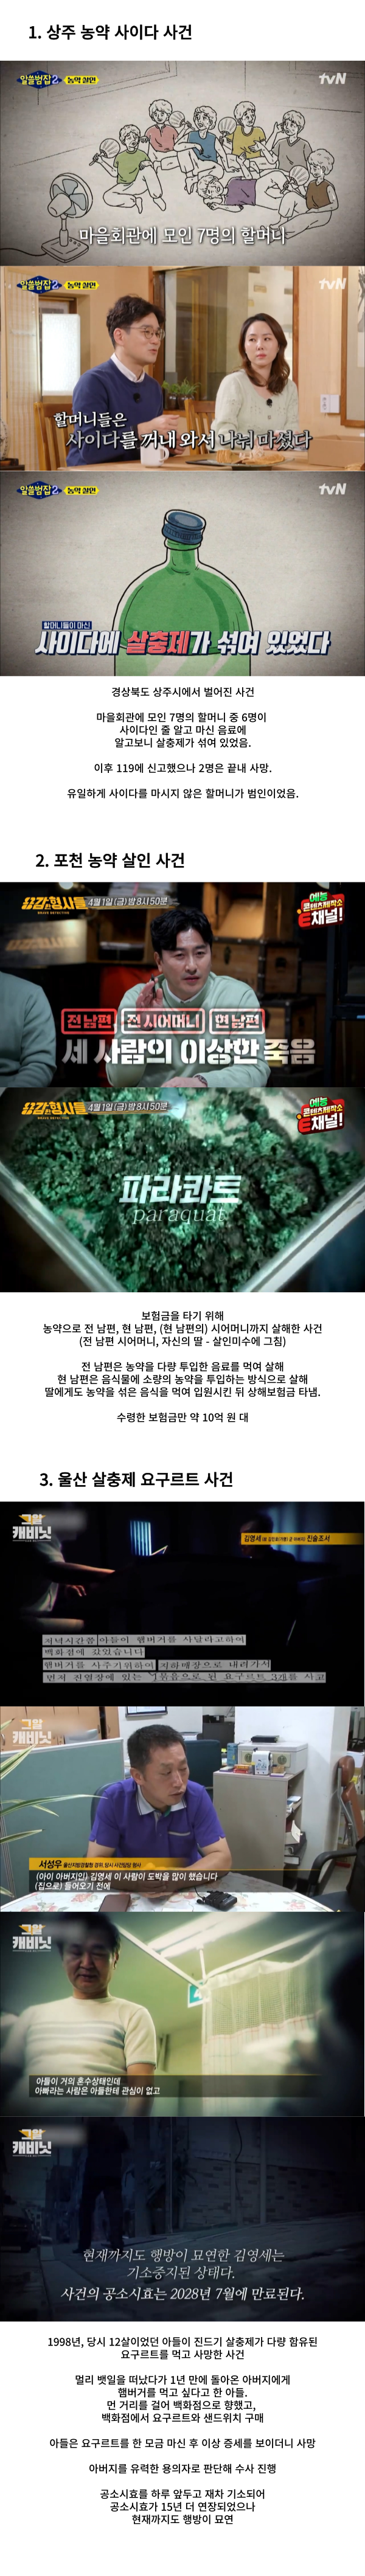 한국 농약 살인사건 TOP 3.png